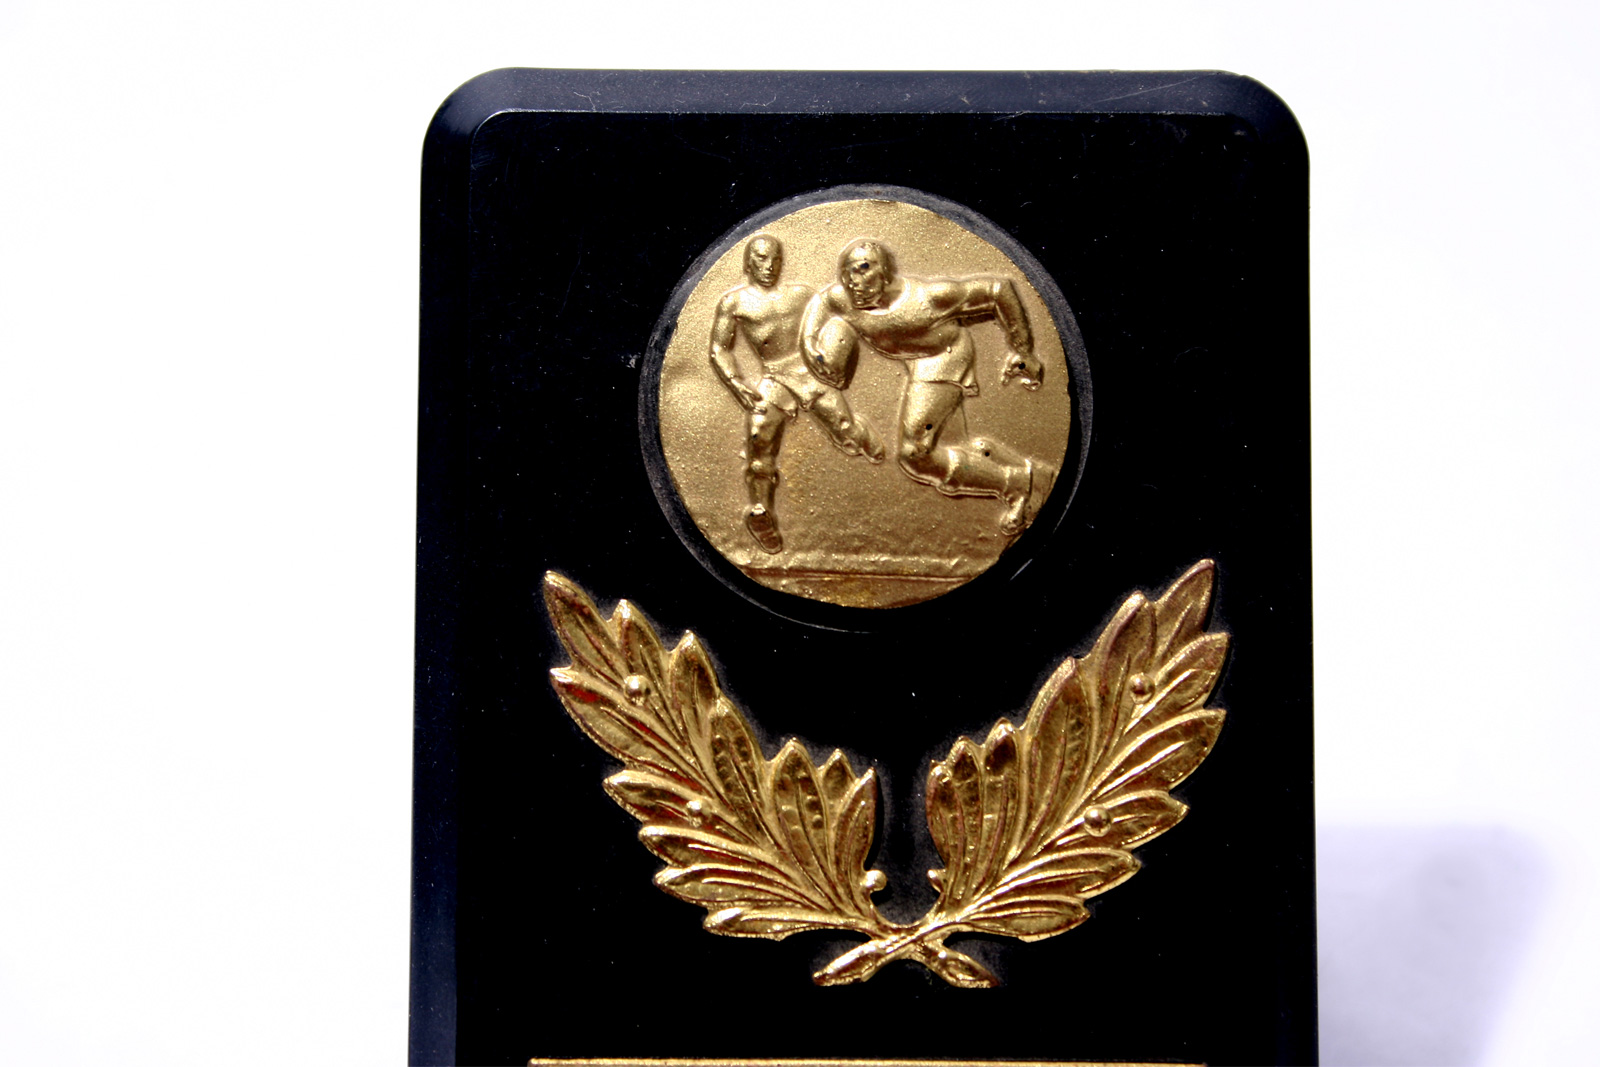 Vintage rugby medal